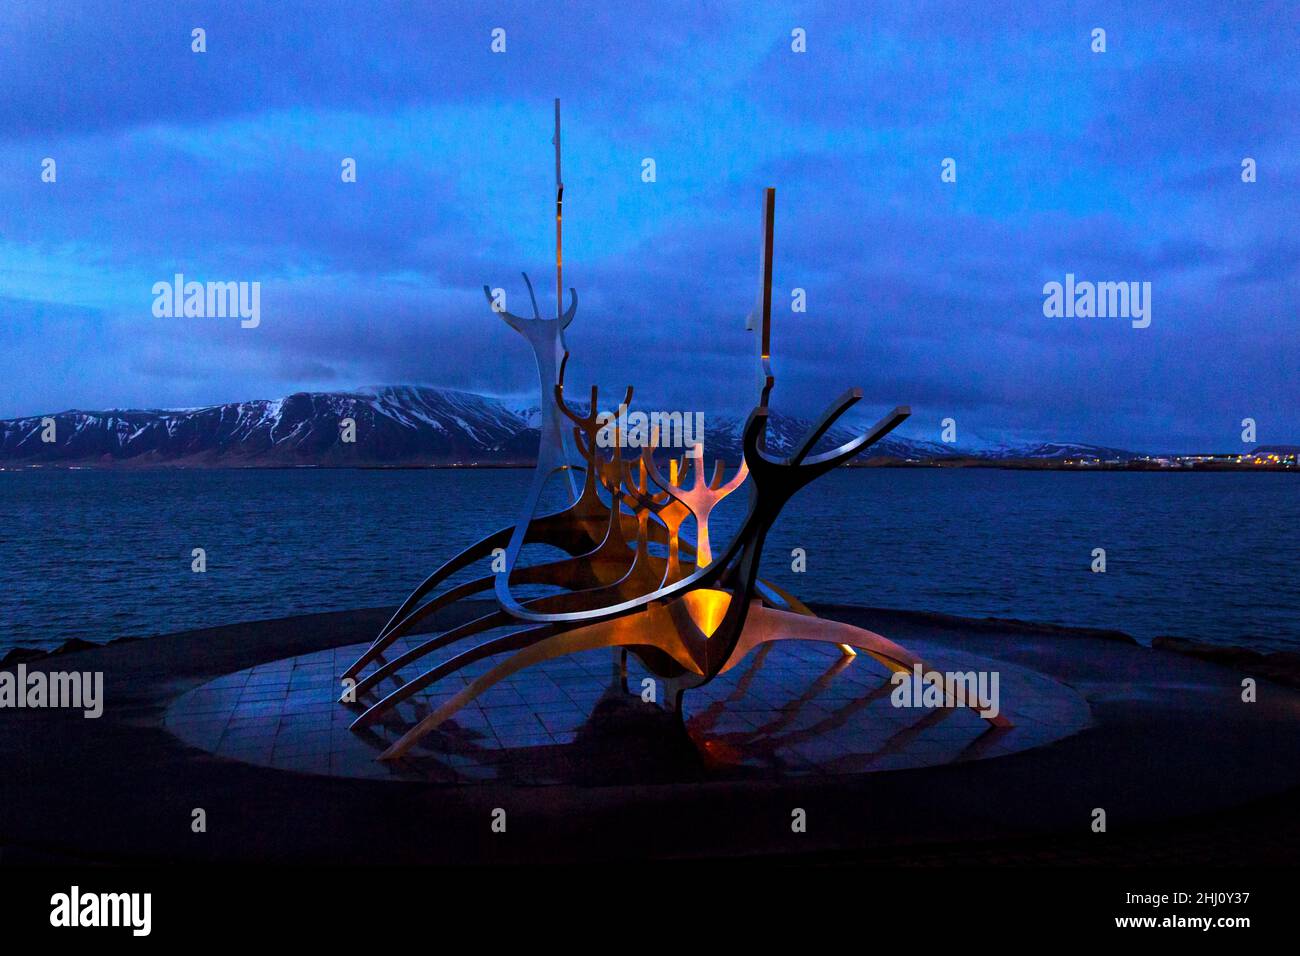 Sun Voyager Viking long=nave scultura in acciaio Reykjavik Waterfront Islanda Solfarid copia spazio sogno barca sera notte mare e neve colline Foto Stock